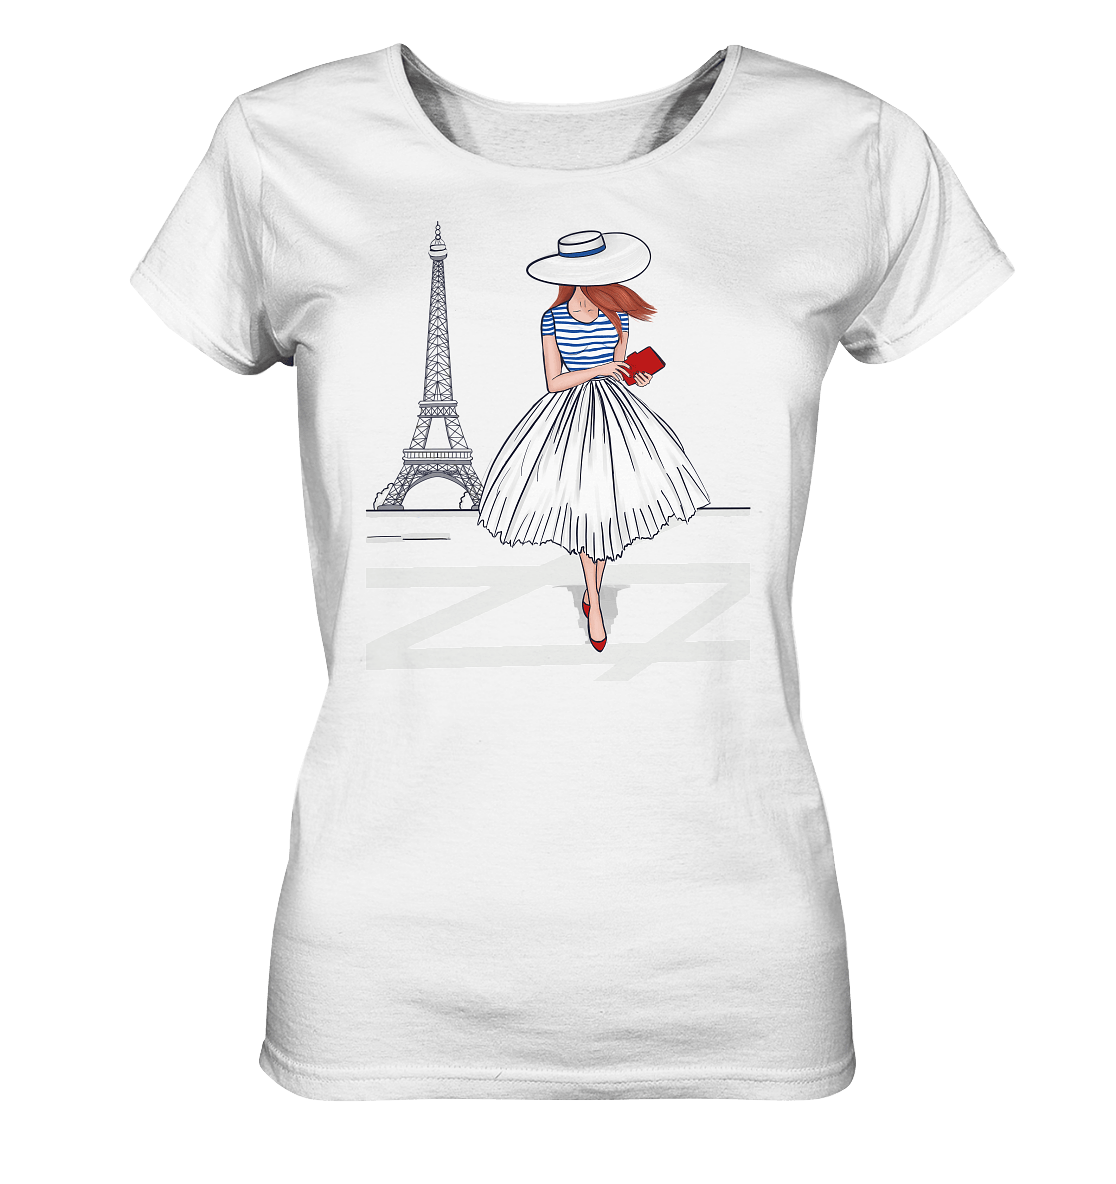 Damen T-Shirt mit handgezeichneten Eifelturm und Dame mit Hut und Streifenshirt in blau. Damen T-Shirt Fashion Sketch Pariserin